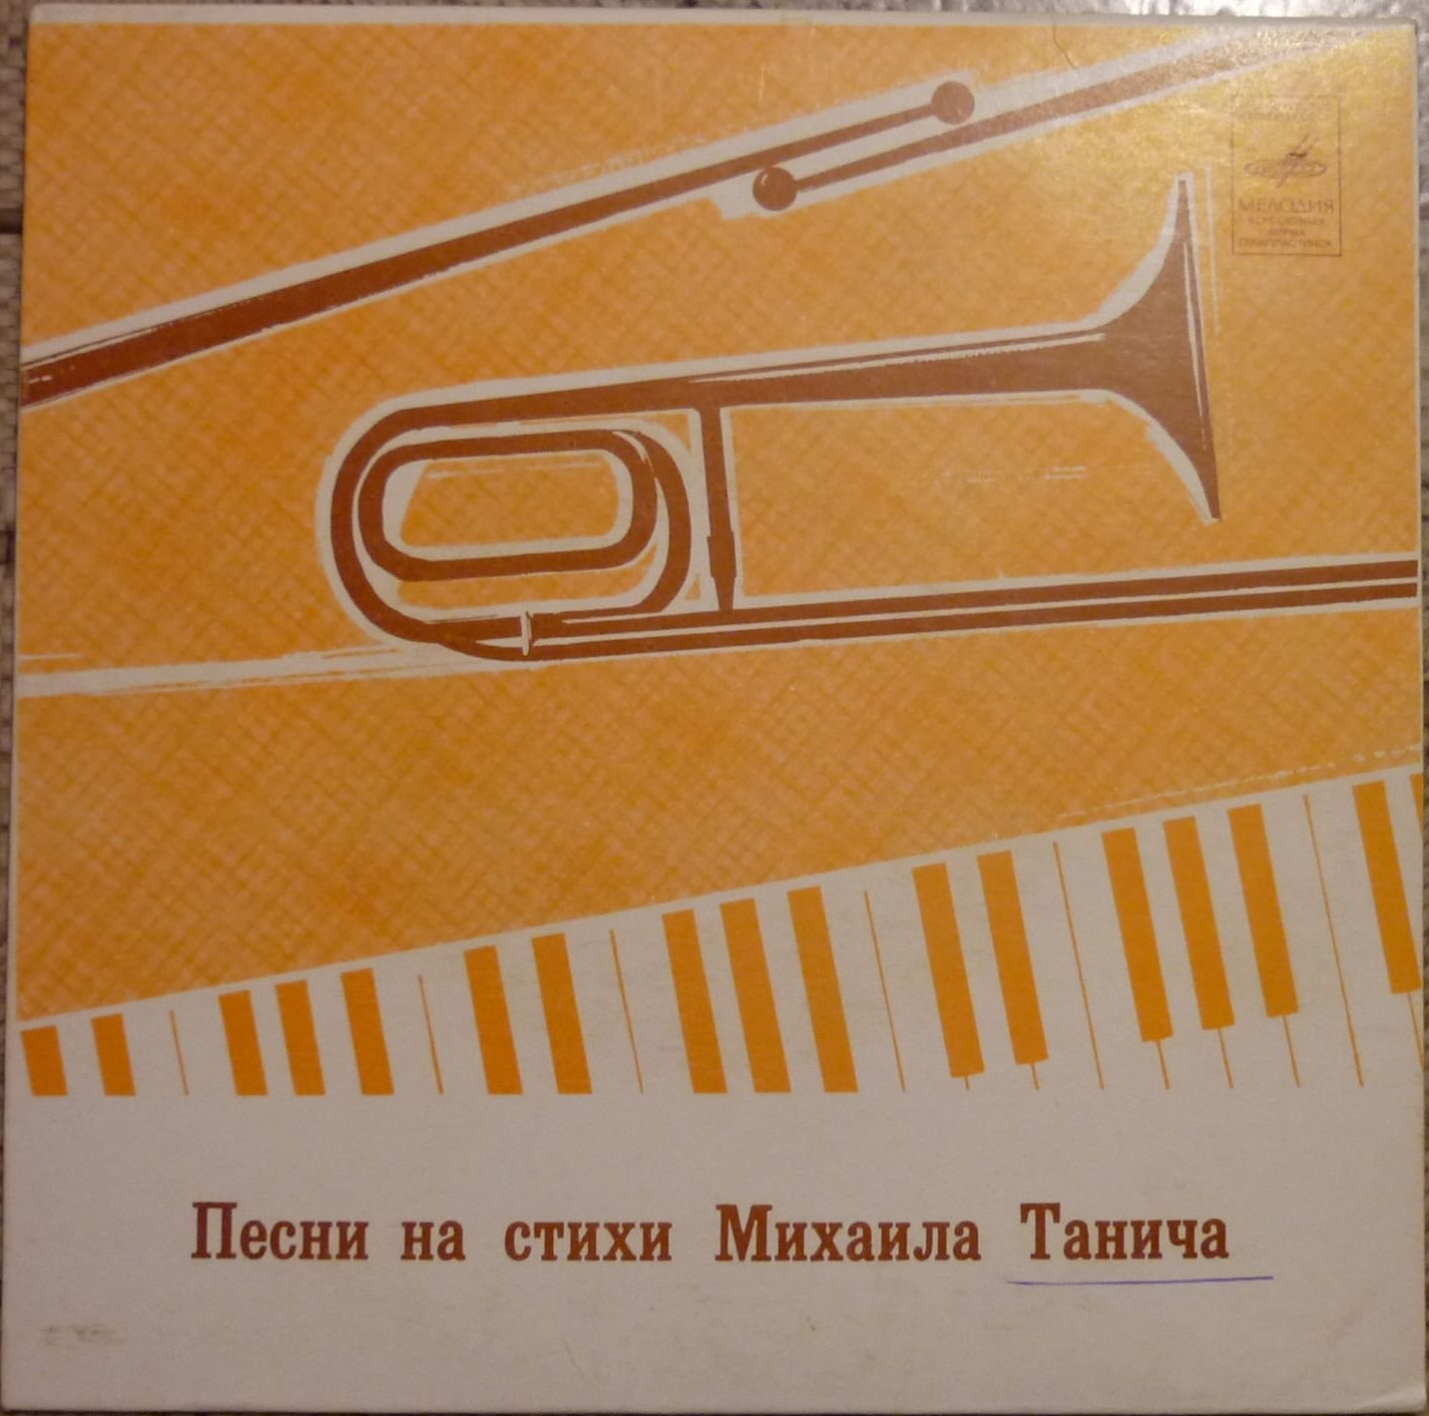 ВИА "Верасы" и "Пламя" поют песни на стихи М. Танича